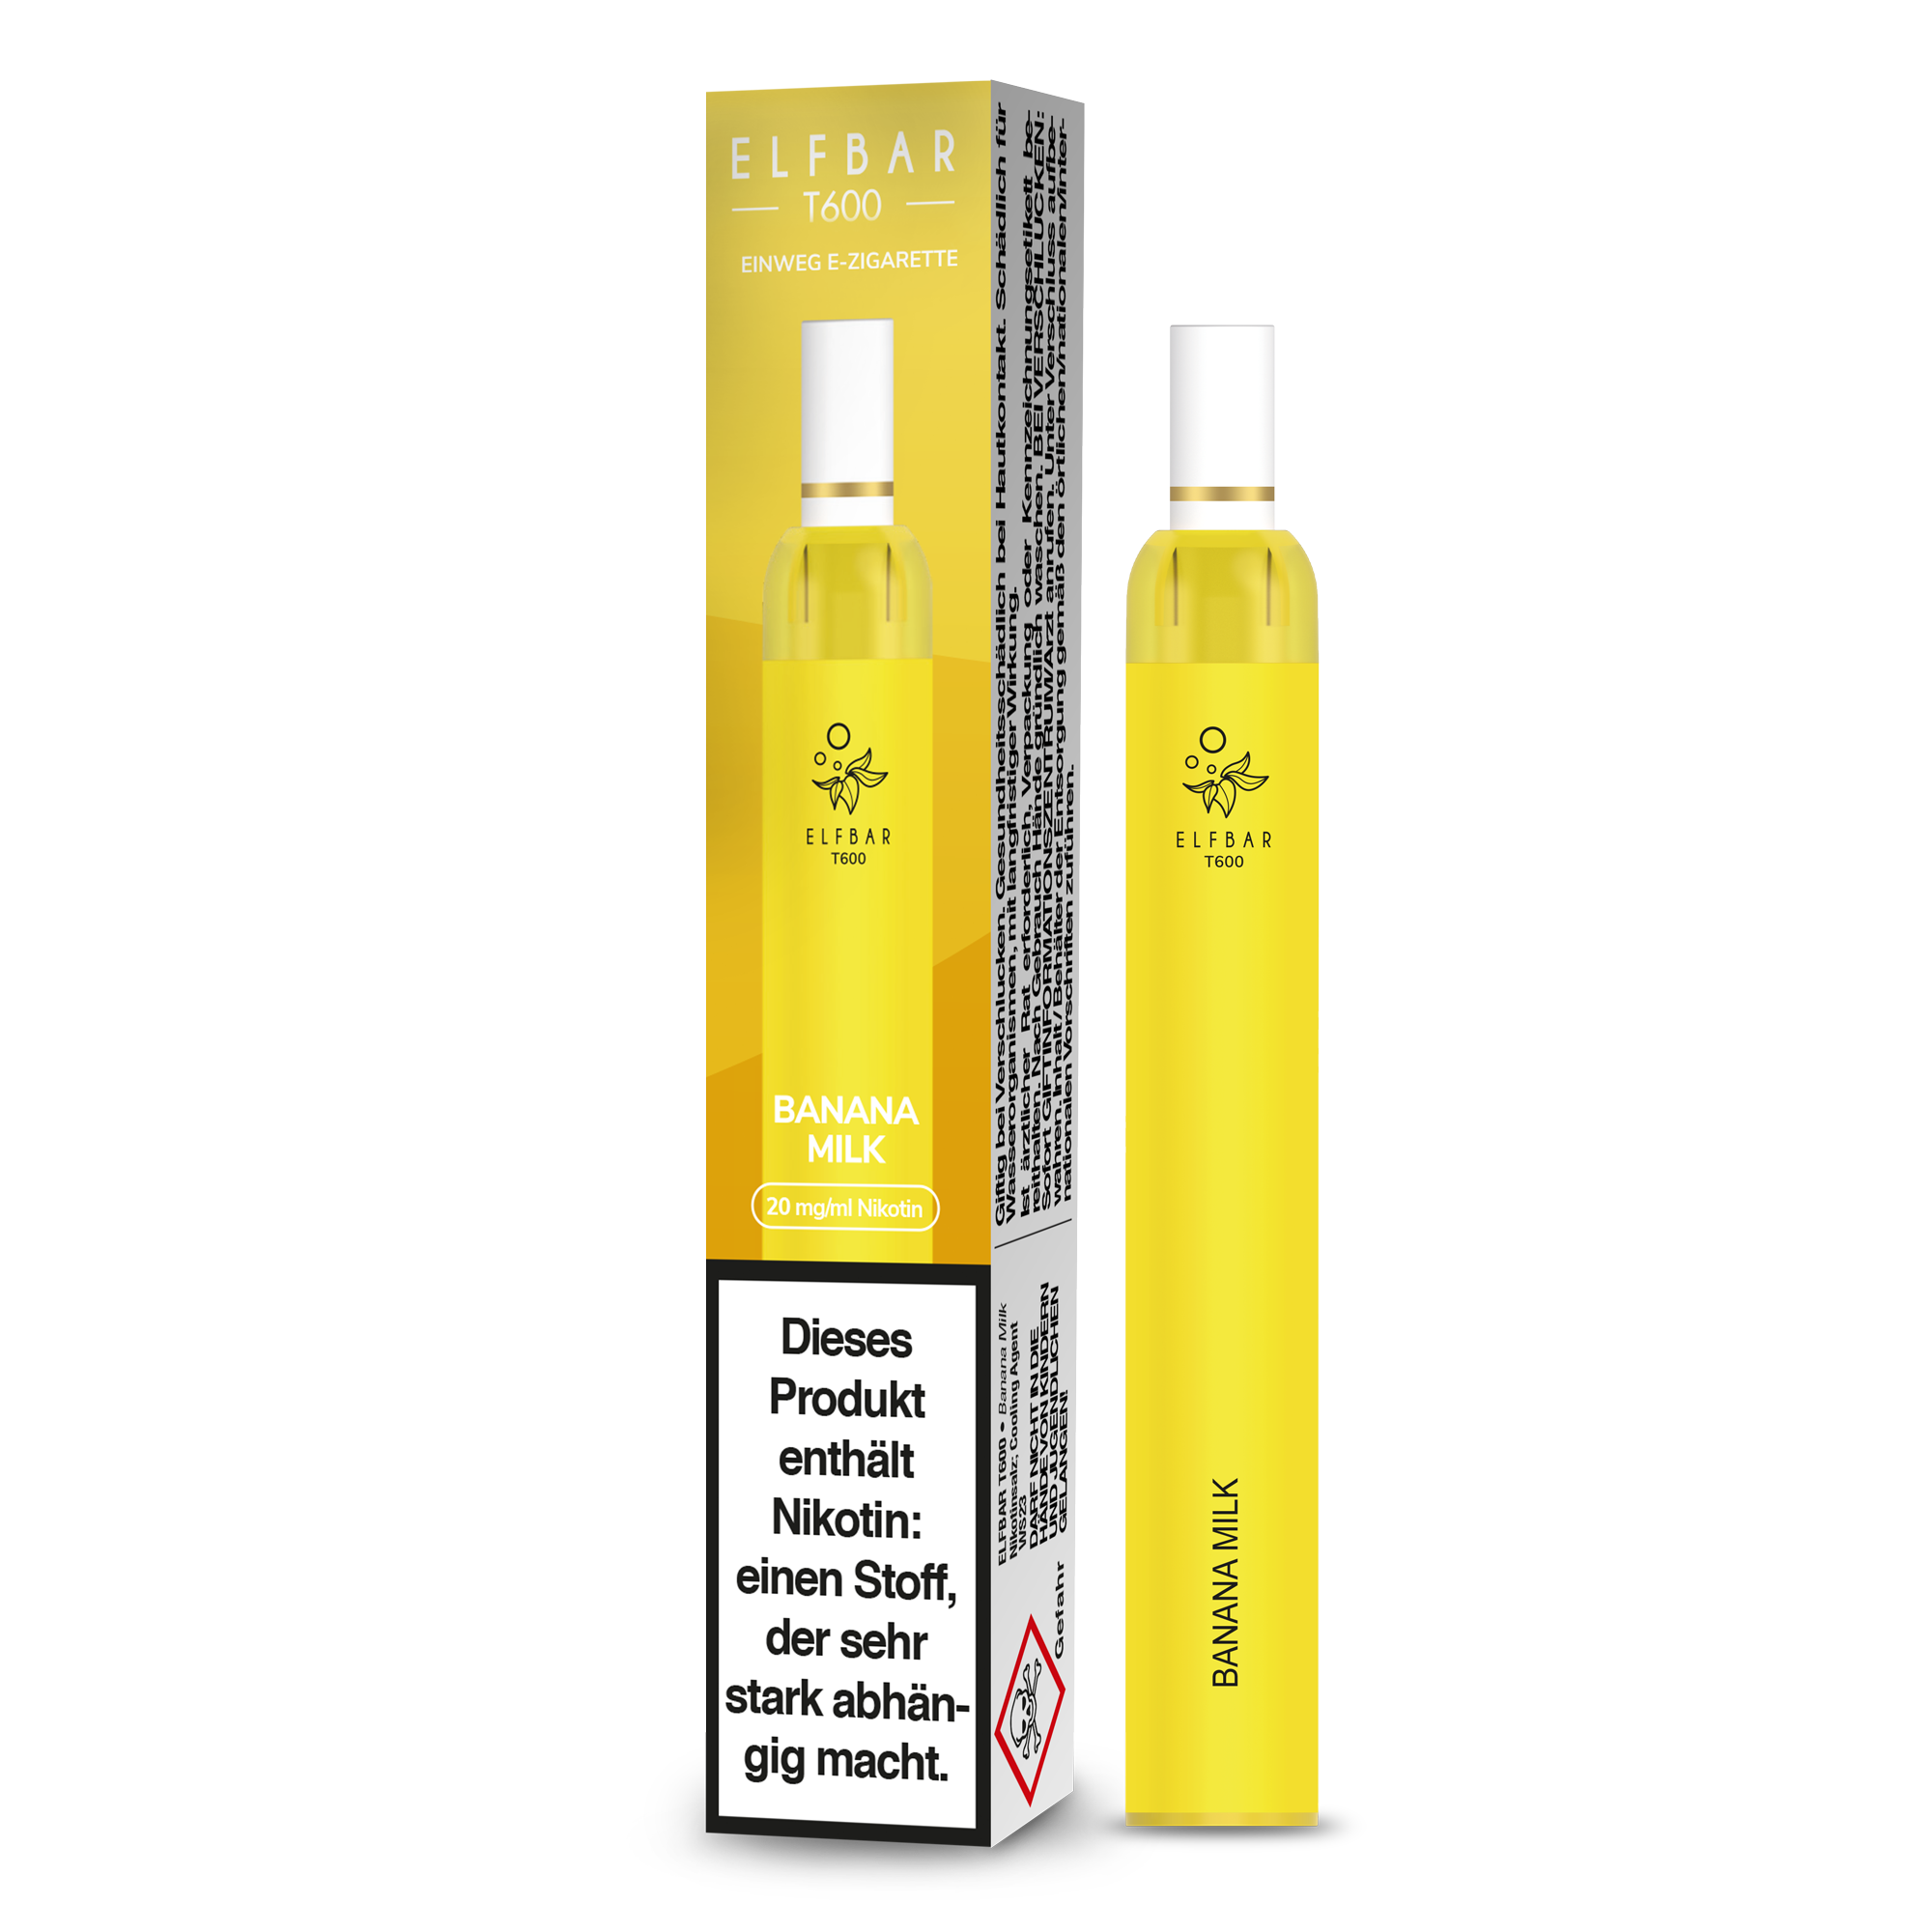 Elf Bar T600 Einweg E-Zigarette - Banana Milk 20 mg/ml